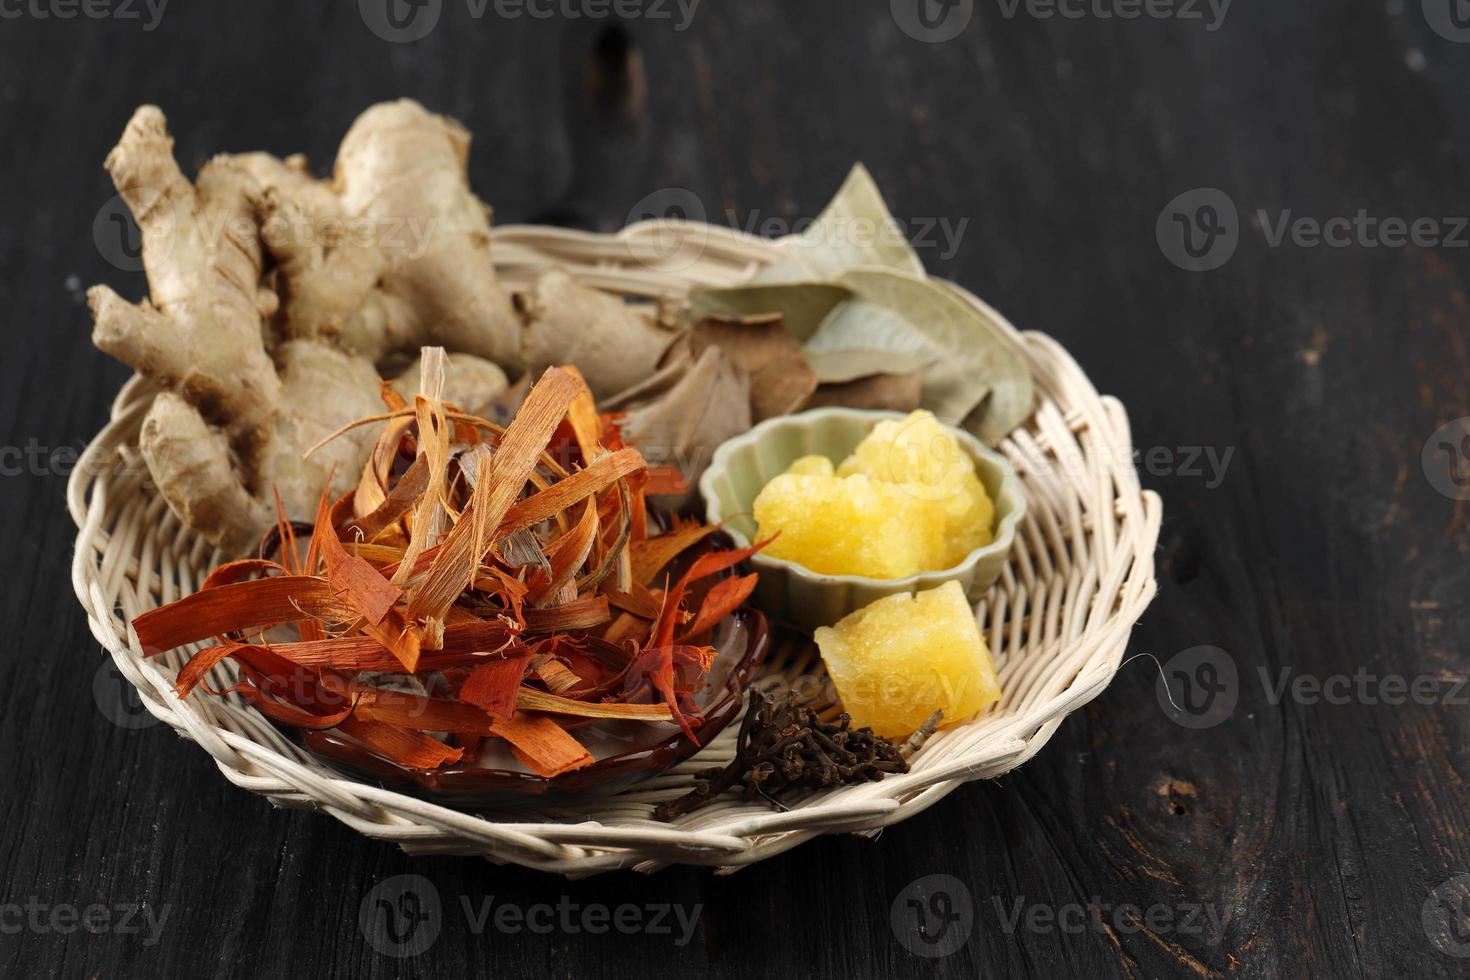 ingredientes wedang uwuh, bebida tradicional de ervas de yogyakarta, indonésia. é feito de folhas de cravo, noz-moscada, canela, gengibre, kayu secan e açúcar de rocha. foto